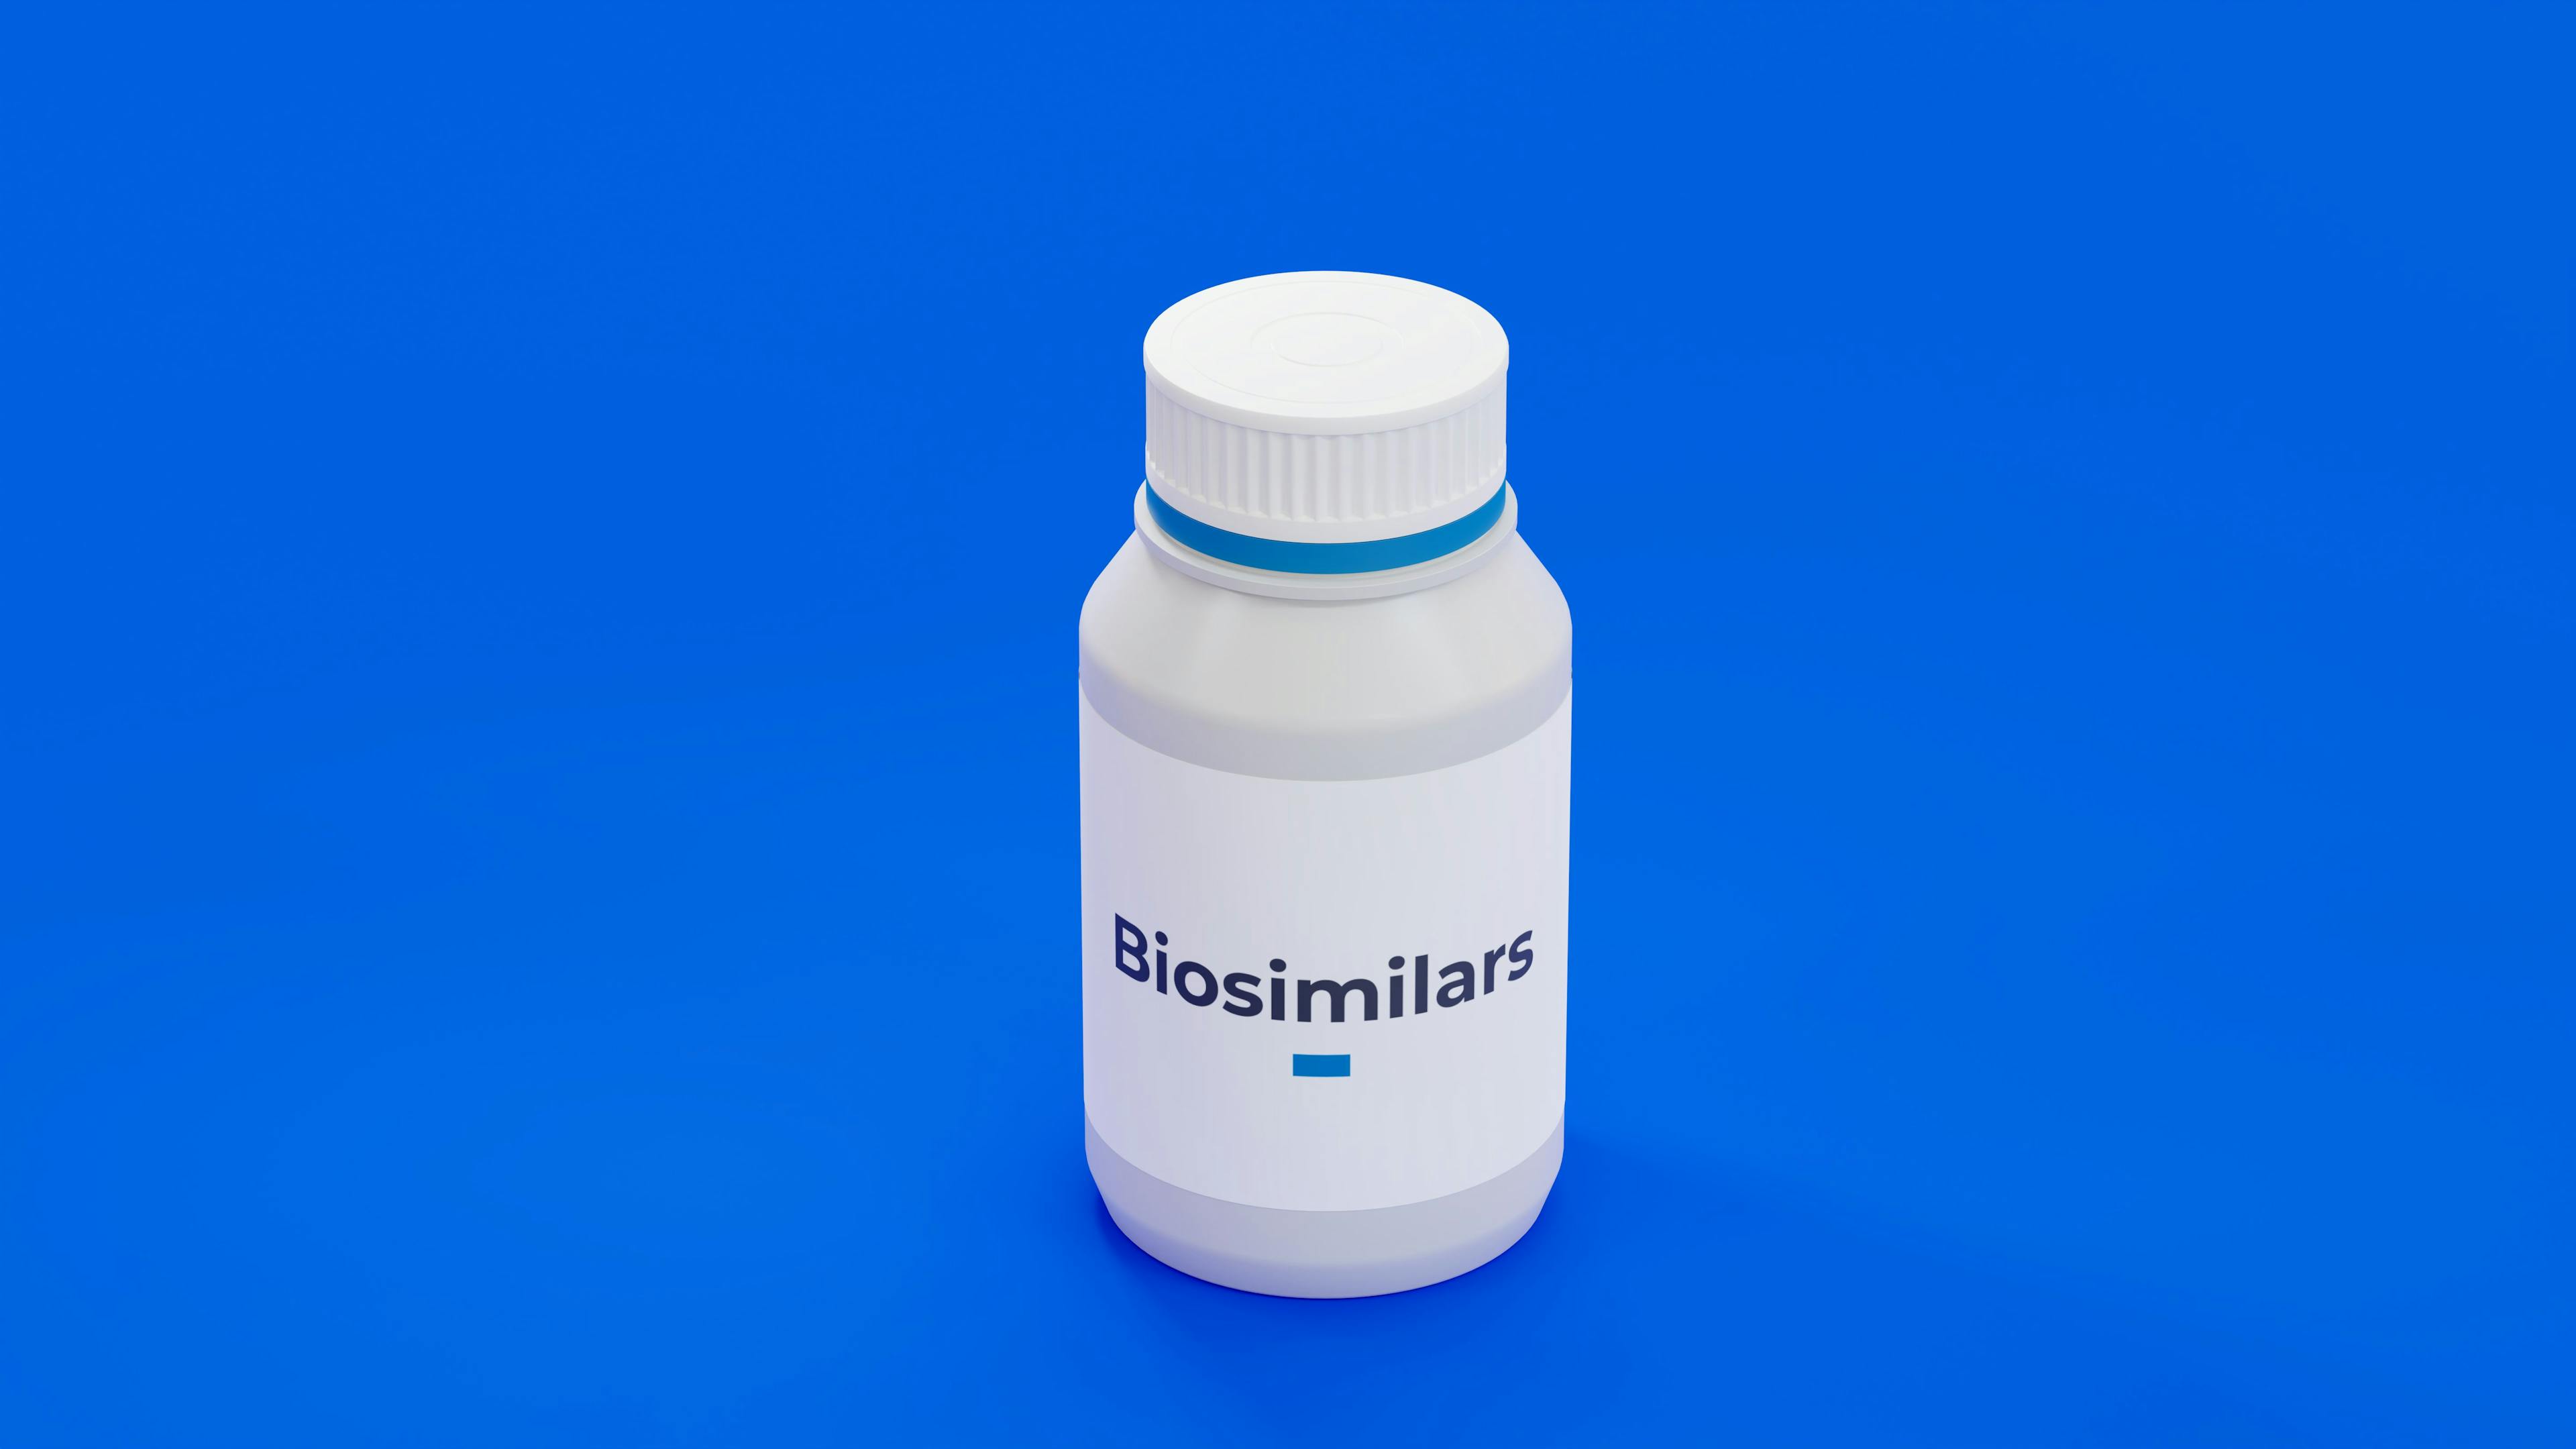 Biosimilar pharmaceutical drug bottle on blue background. A safe biological drug that work like biologic medicine. 3d illustration. Credit: Carl - stock.adobe.com